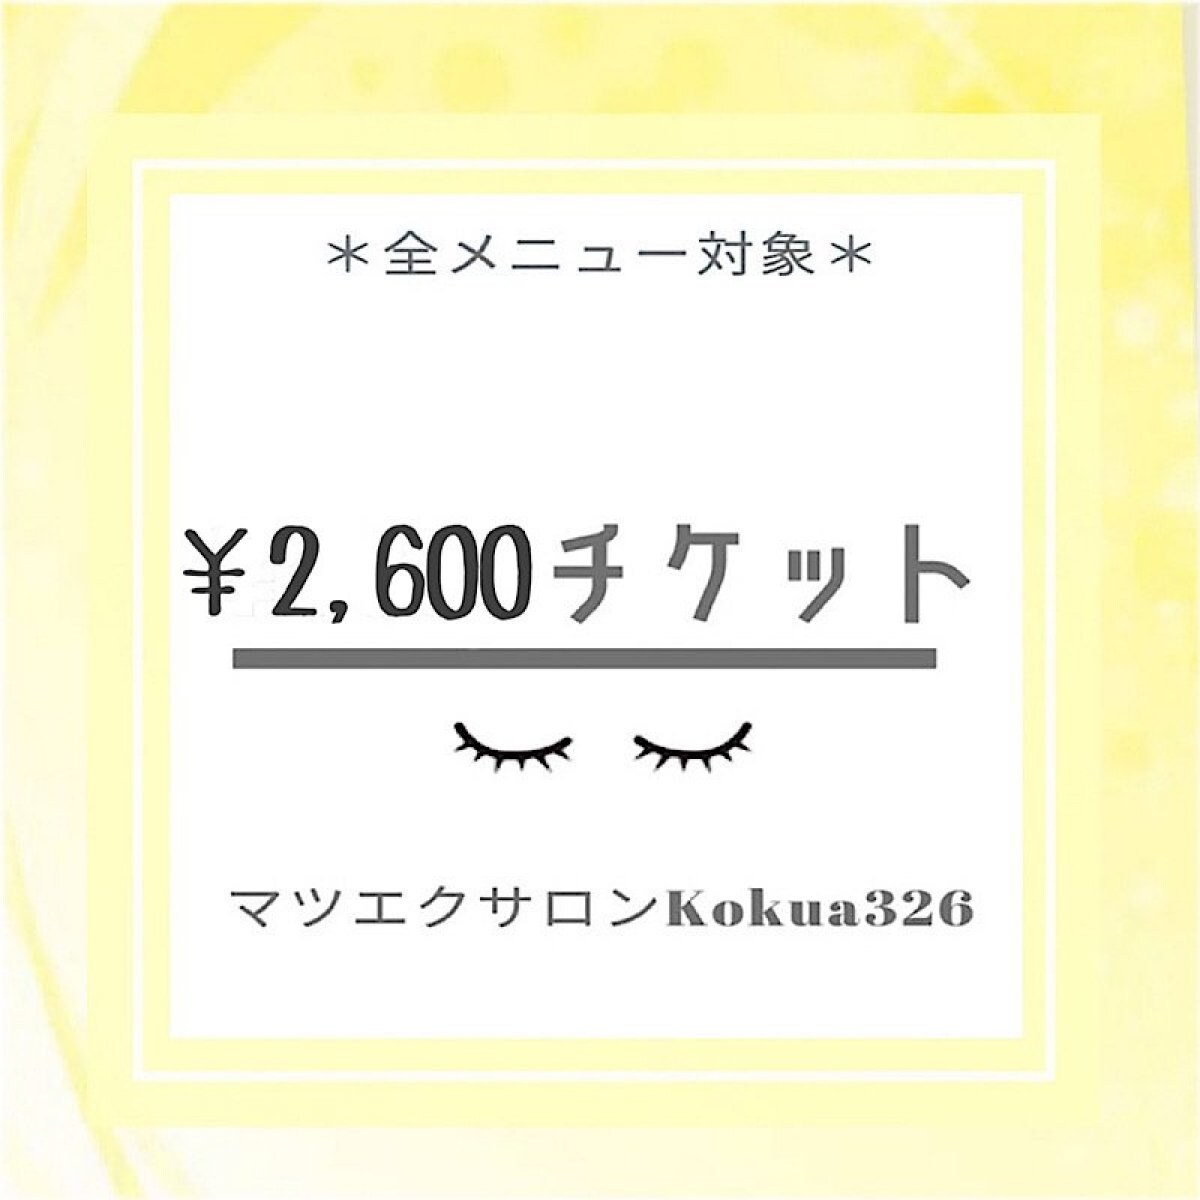 【現地払い専用】マツエク施術料金2600円ウェブチケット